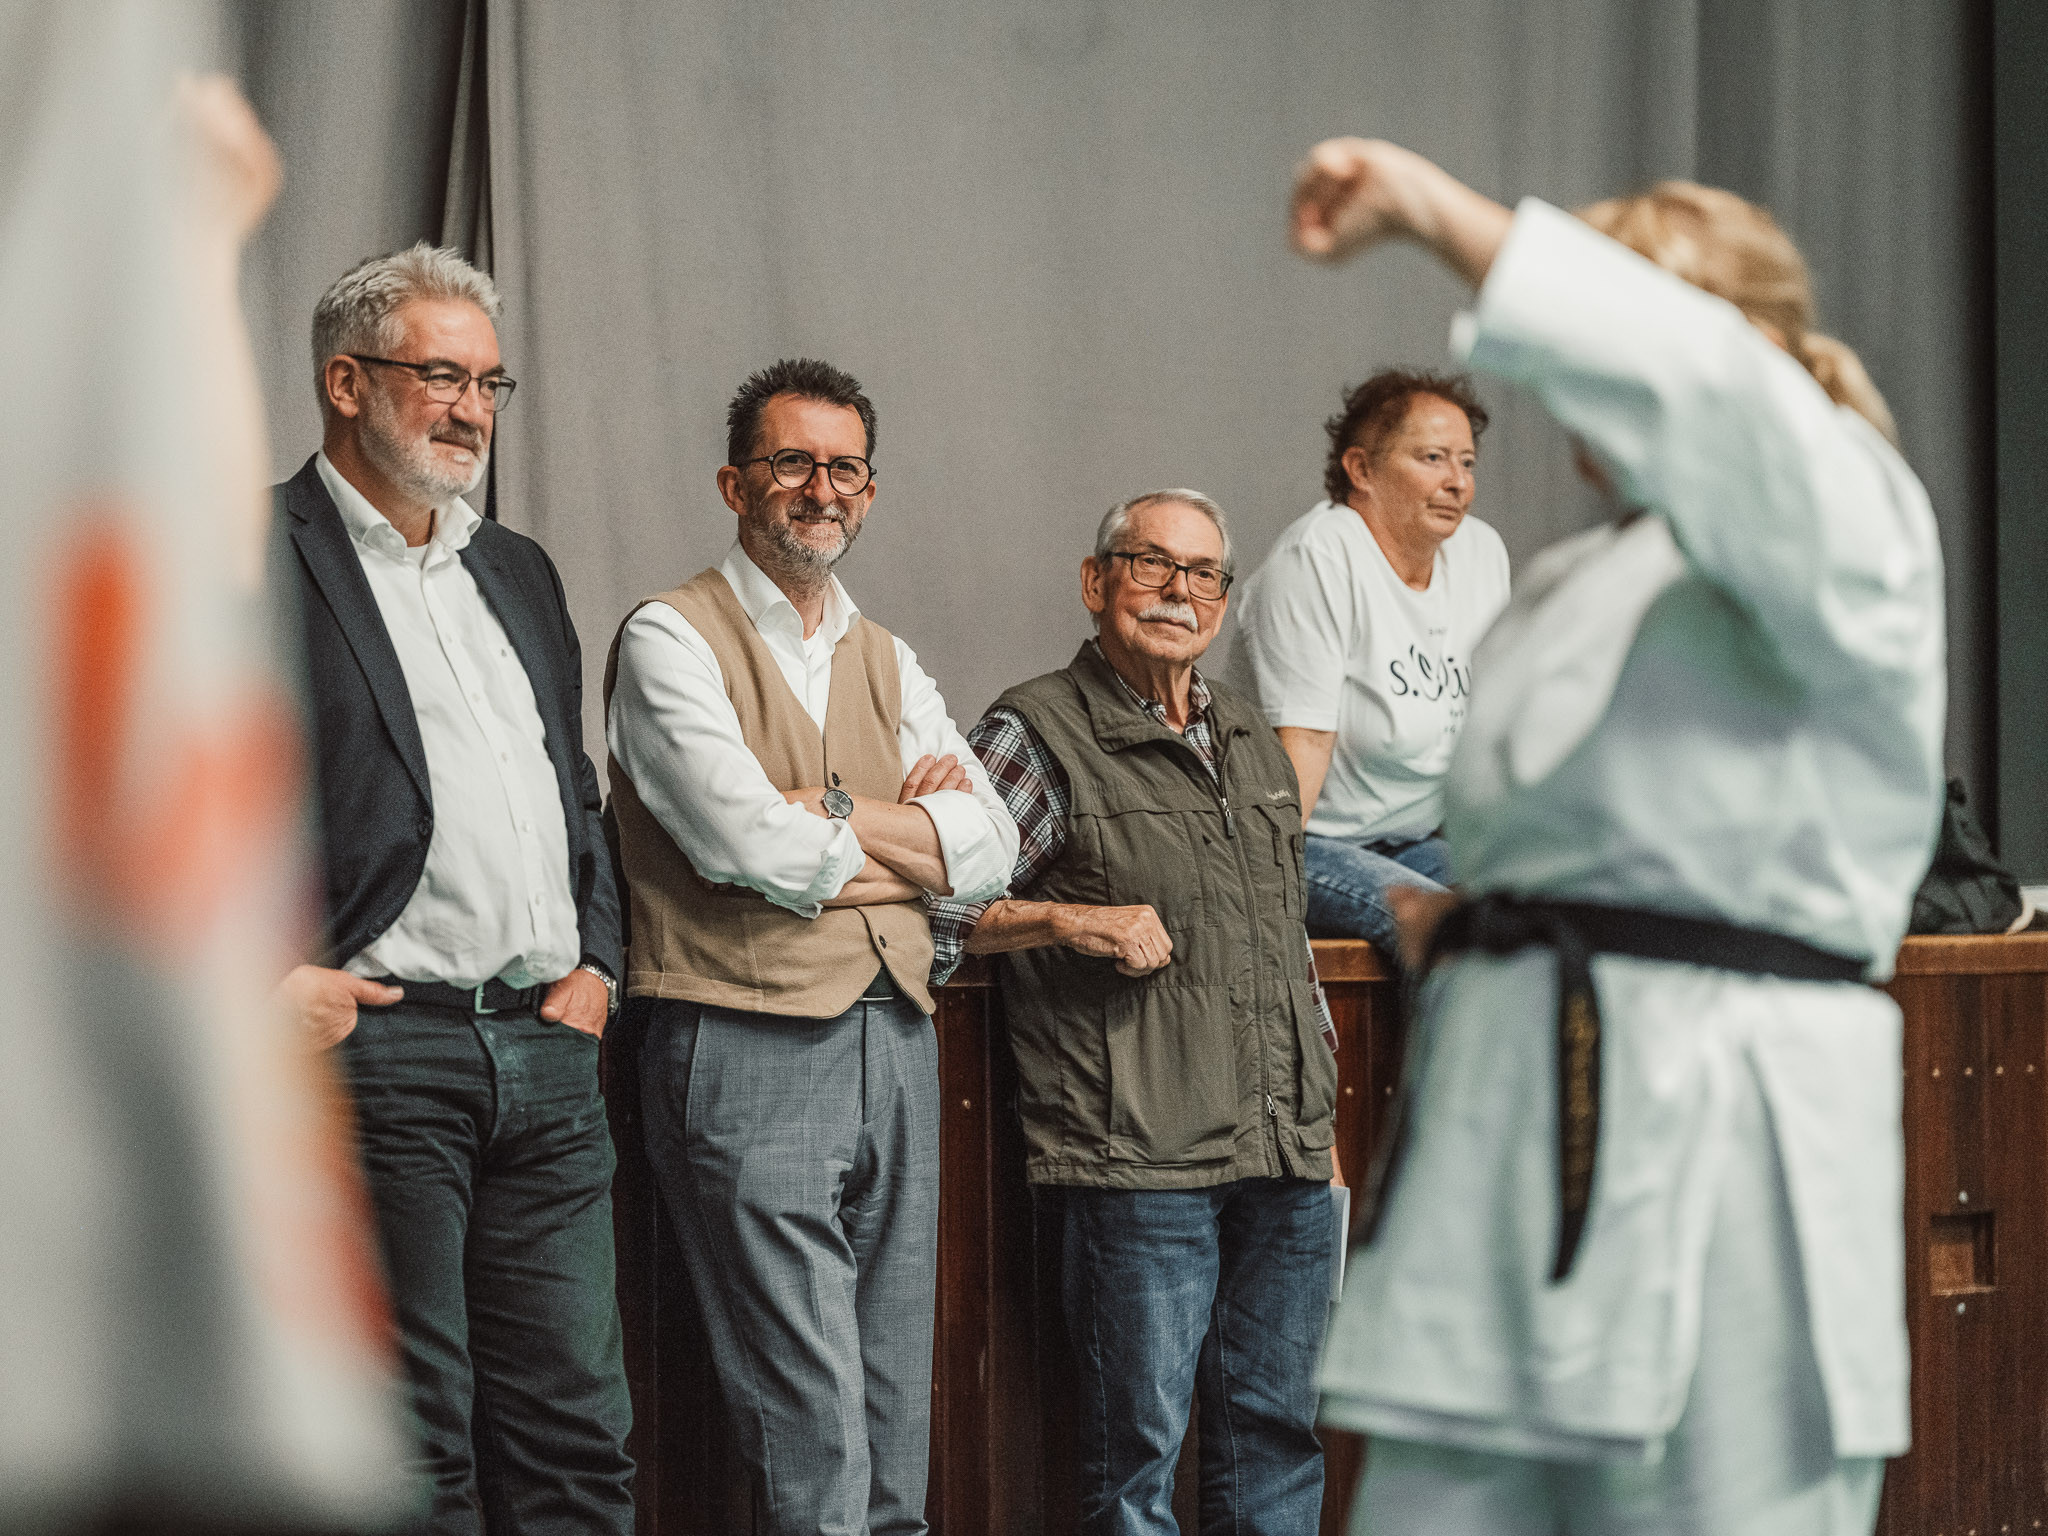 Stefan Louis, Präsident des Saarländischen Karate Verbandes (SKV) und Reinhold Jost, Minister für Inneres, Bauen und Sport besuchen das Päd-Ka Training der Karate Abteilung des TV Ludweiler.